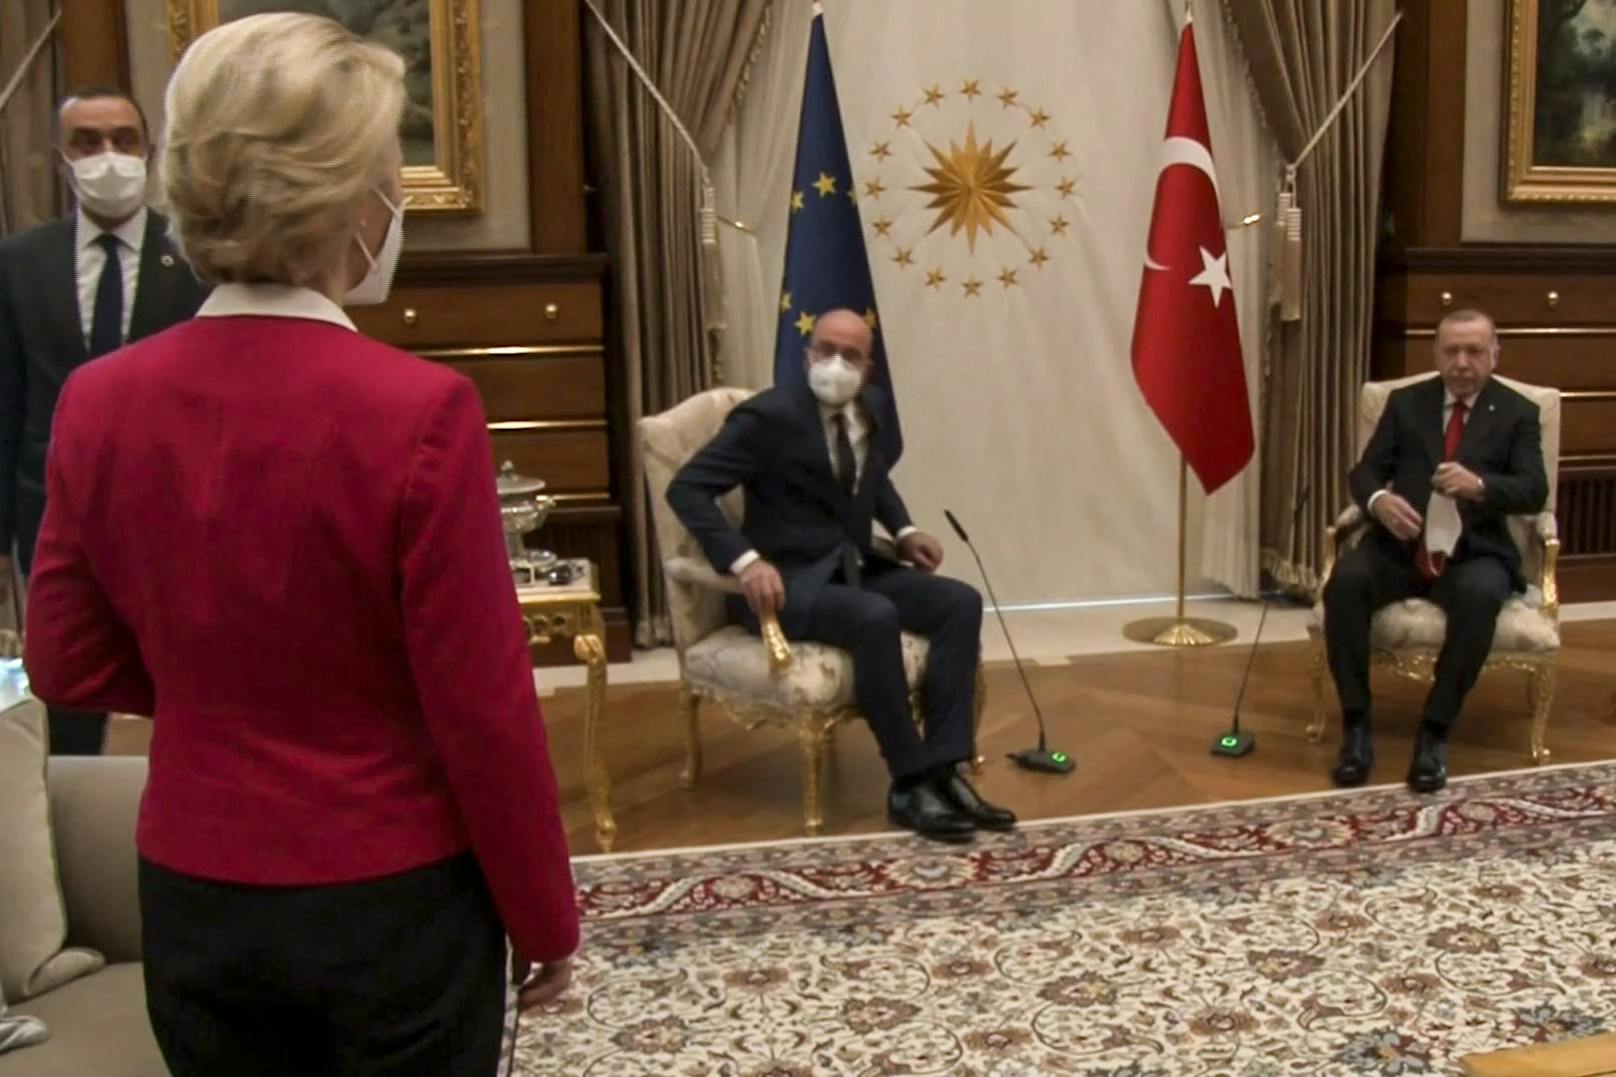 Irritation bei der EU-Kommissionspräsidentin: Beim Treffen mit dem türkischen Präsidenten durfte sie nicht auf dem Sesseln neben den Männern sitzen.